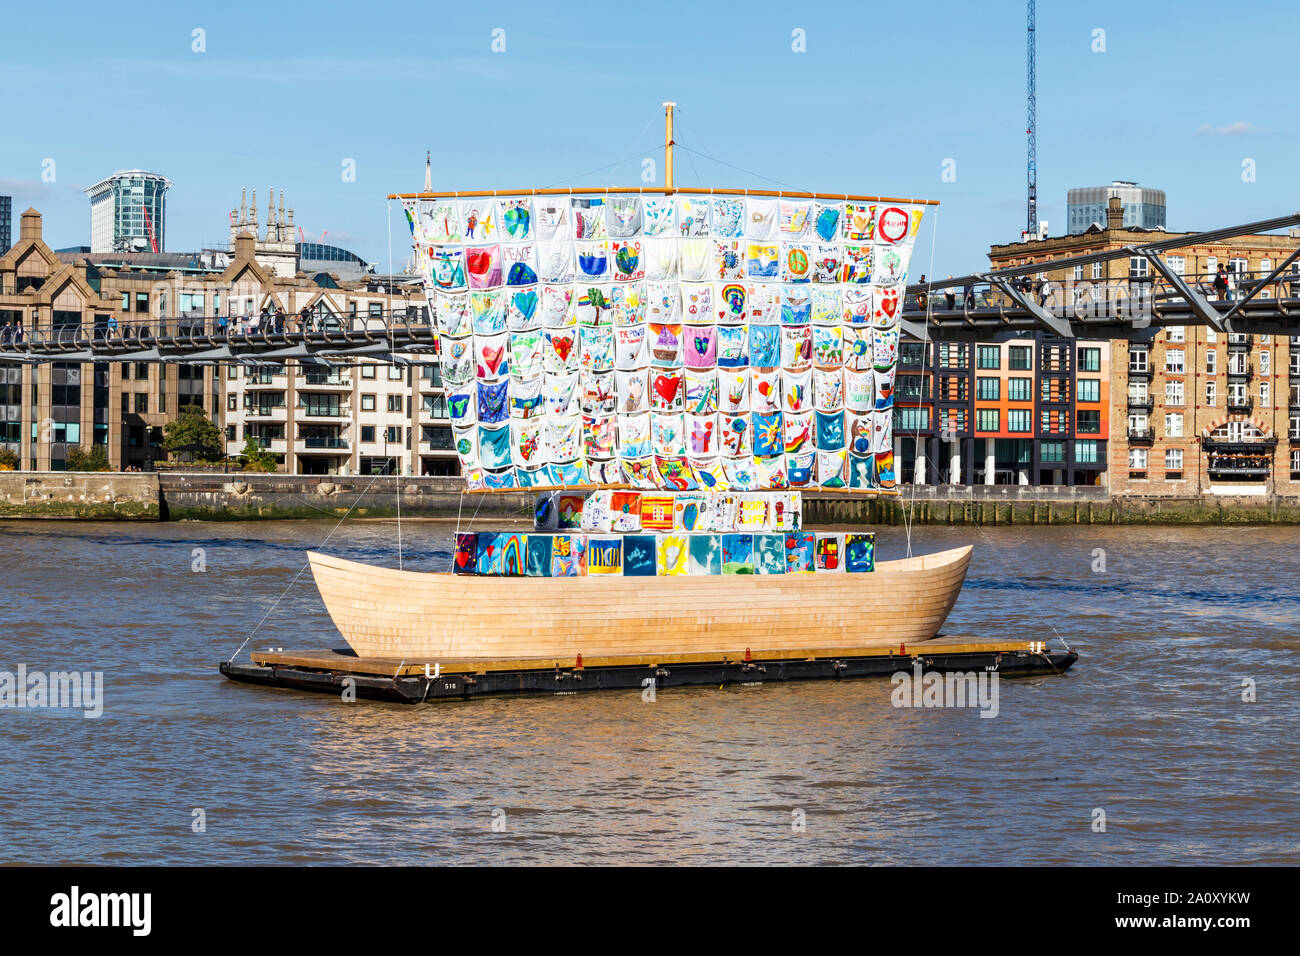 El buque de la tolerancia, una obra por la Ilya y Emilia Kabakov Foundation, en el Río Támesis en Bankside, London, UK Foto de stock